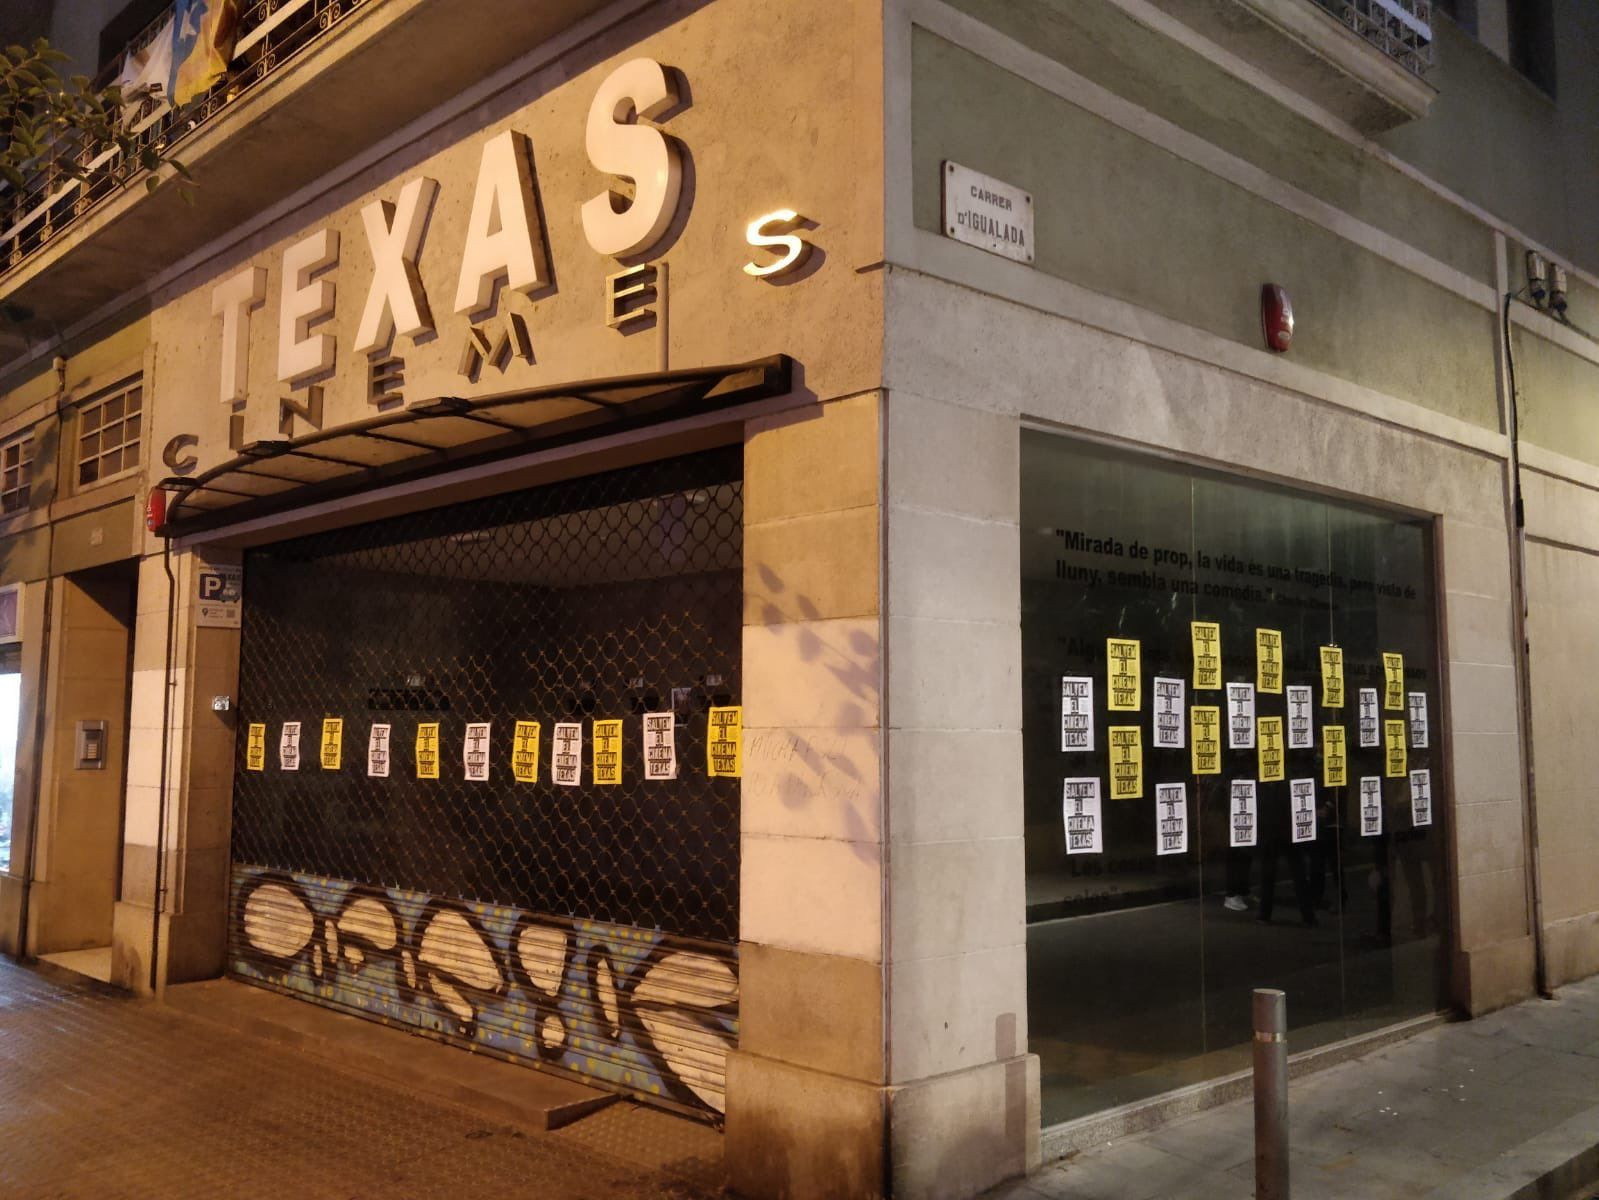 Los Cines Texas cerrados y empapelados con carteles que reivindican que no desaparezcan / SALVEM EL TEXAS